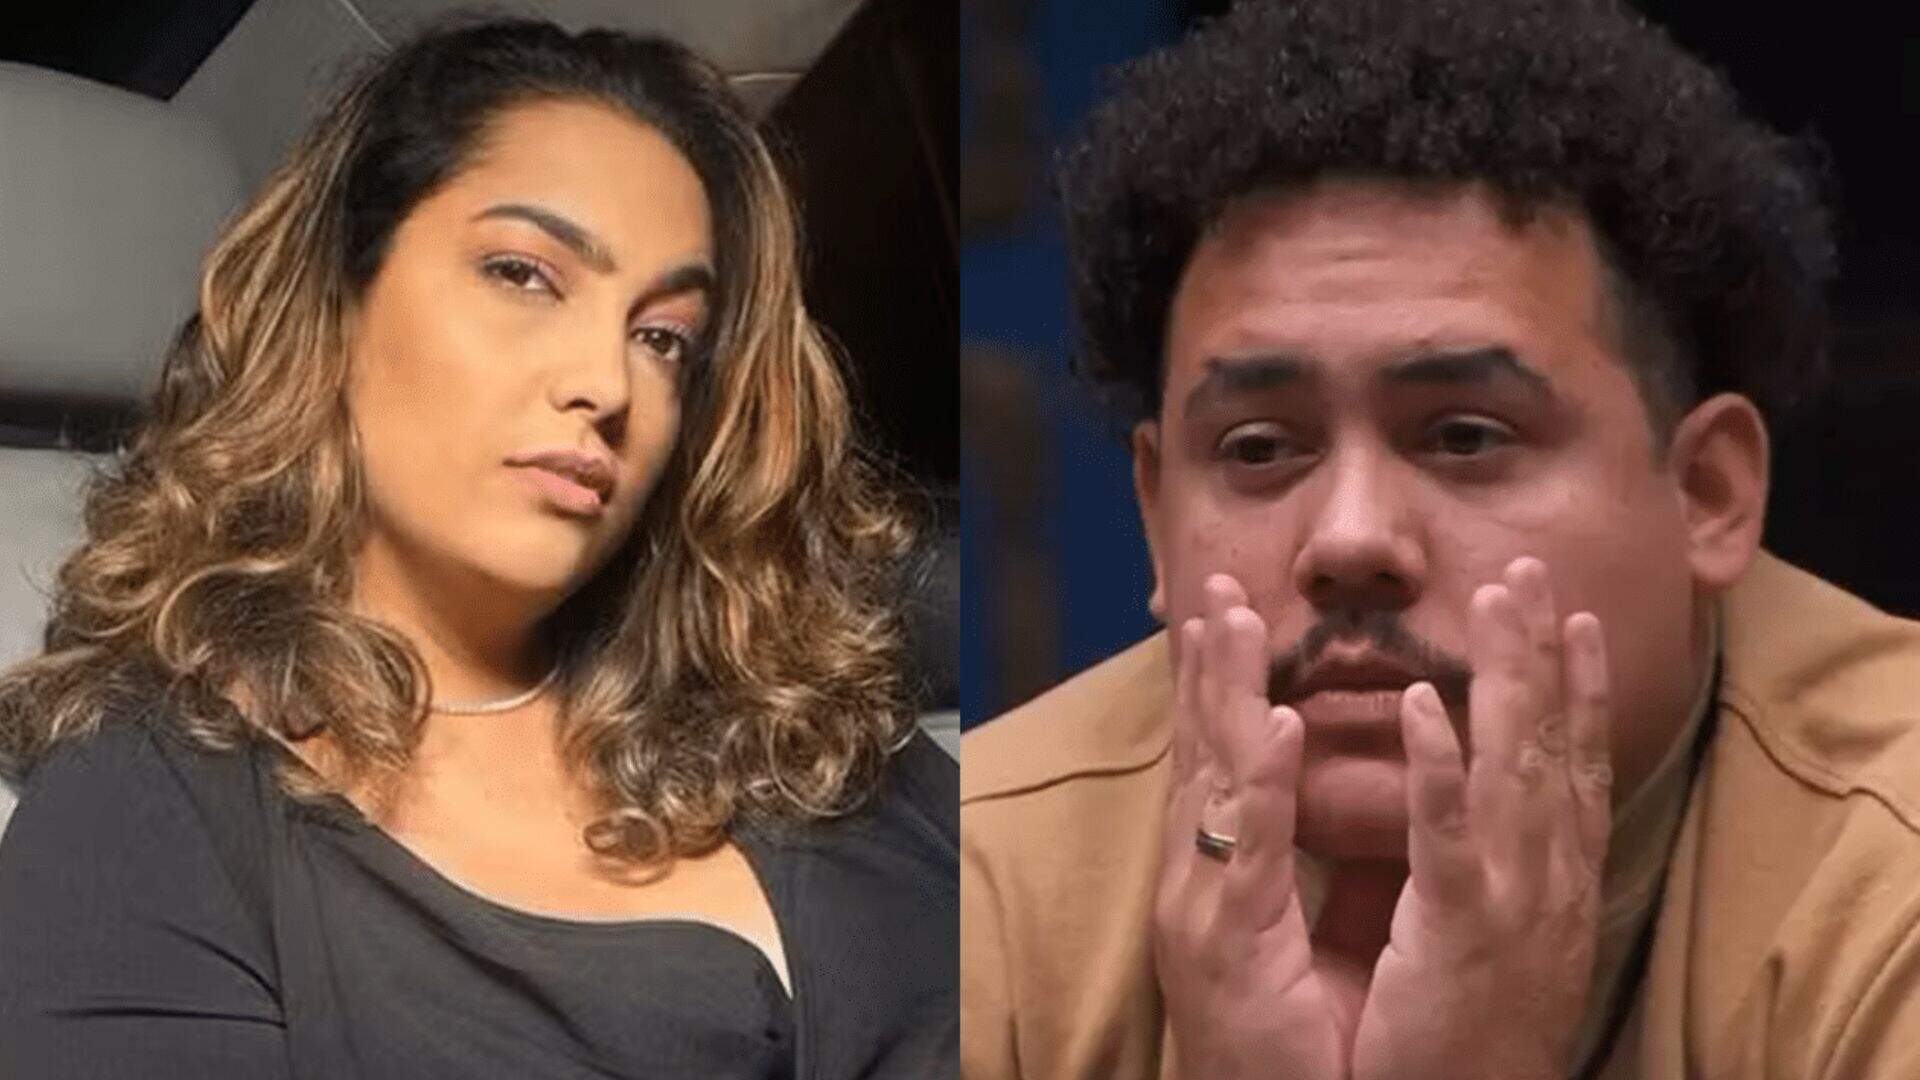 Após Lucas Buda surgir em vídeo com suposta affair, Camila Moura fala sobre relacionamentos - Metropolitana FM